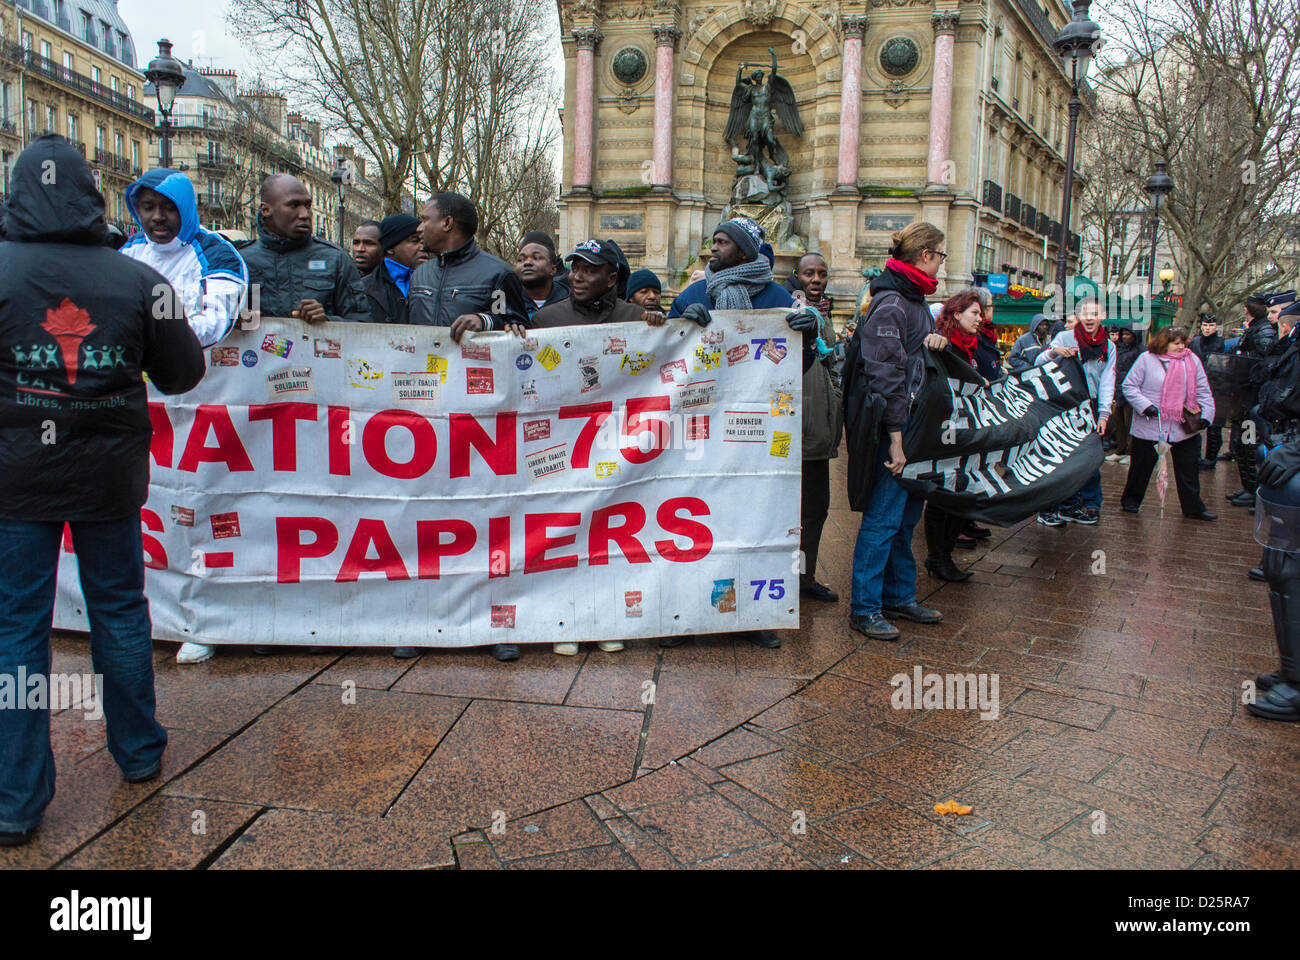 Paris, France. Foule sur les immigrants africains de rue protestant tenir des bannières à migrants sans papiers démonstration, europe migrants, communauté noire paris Banque D'Images